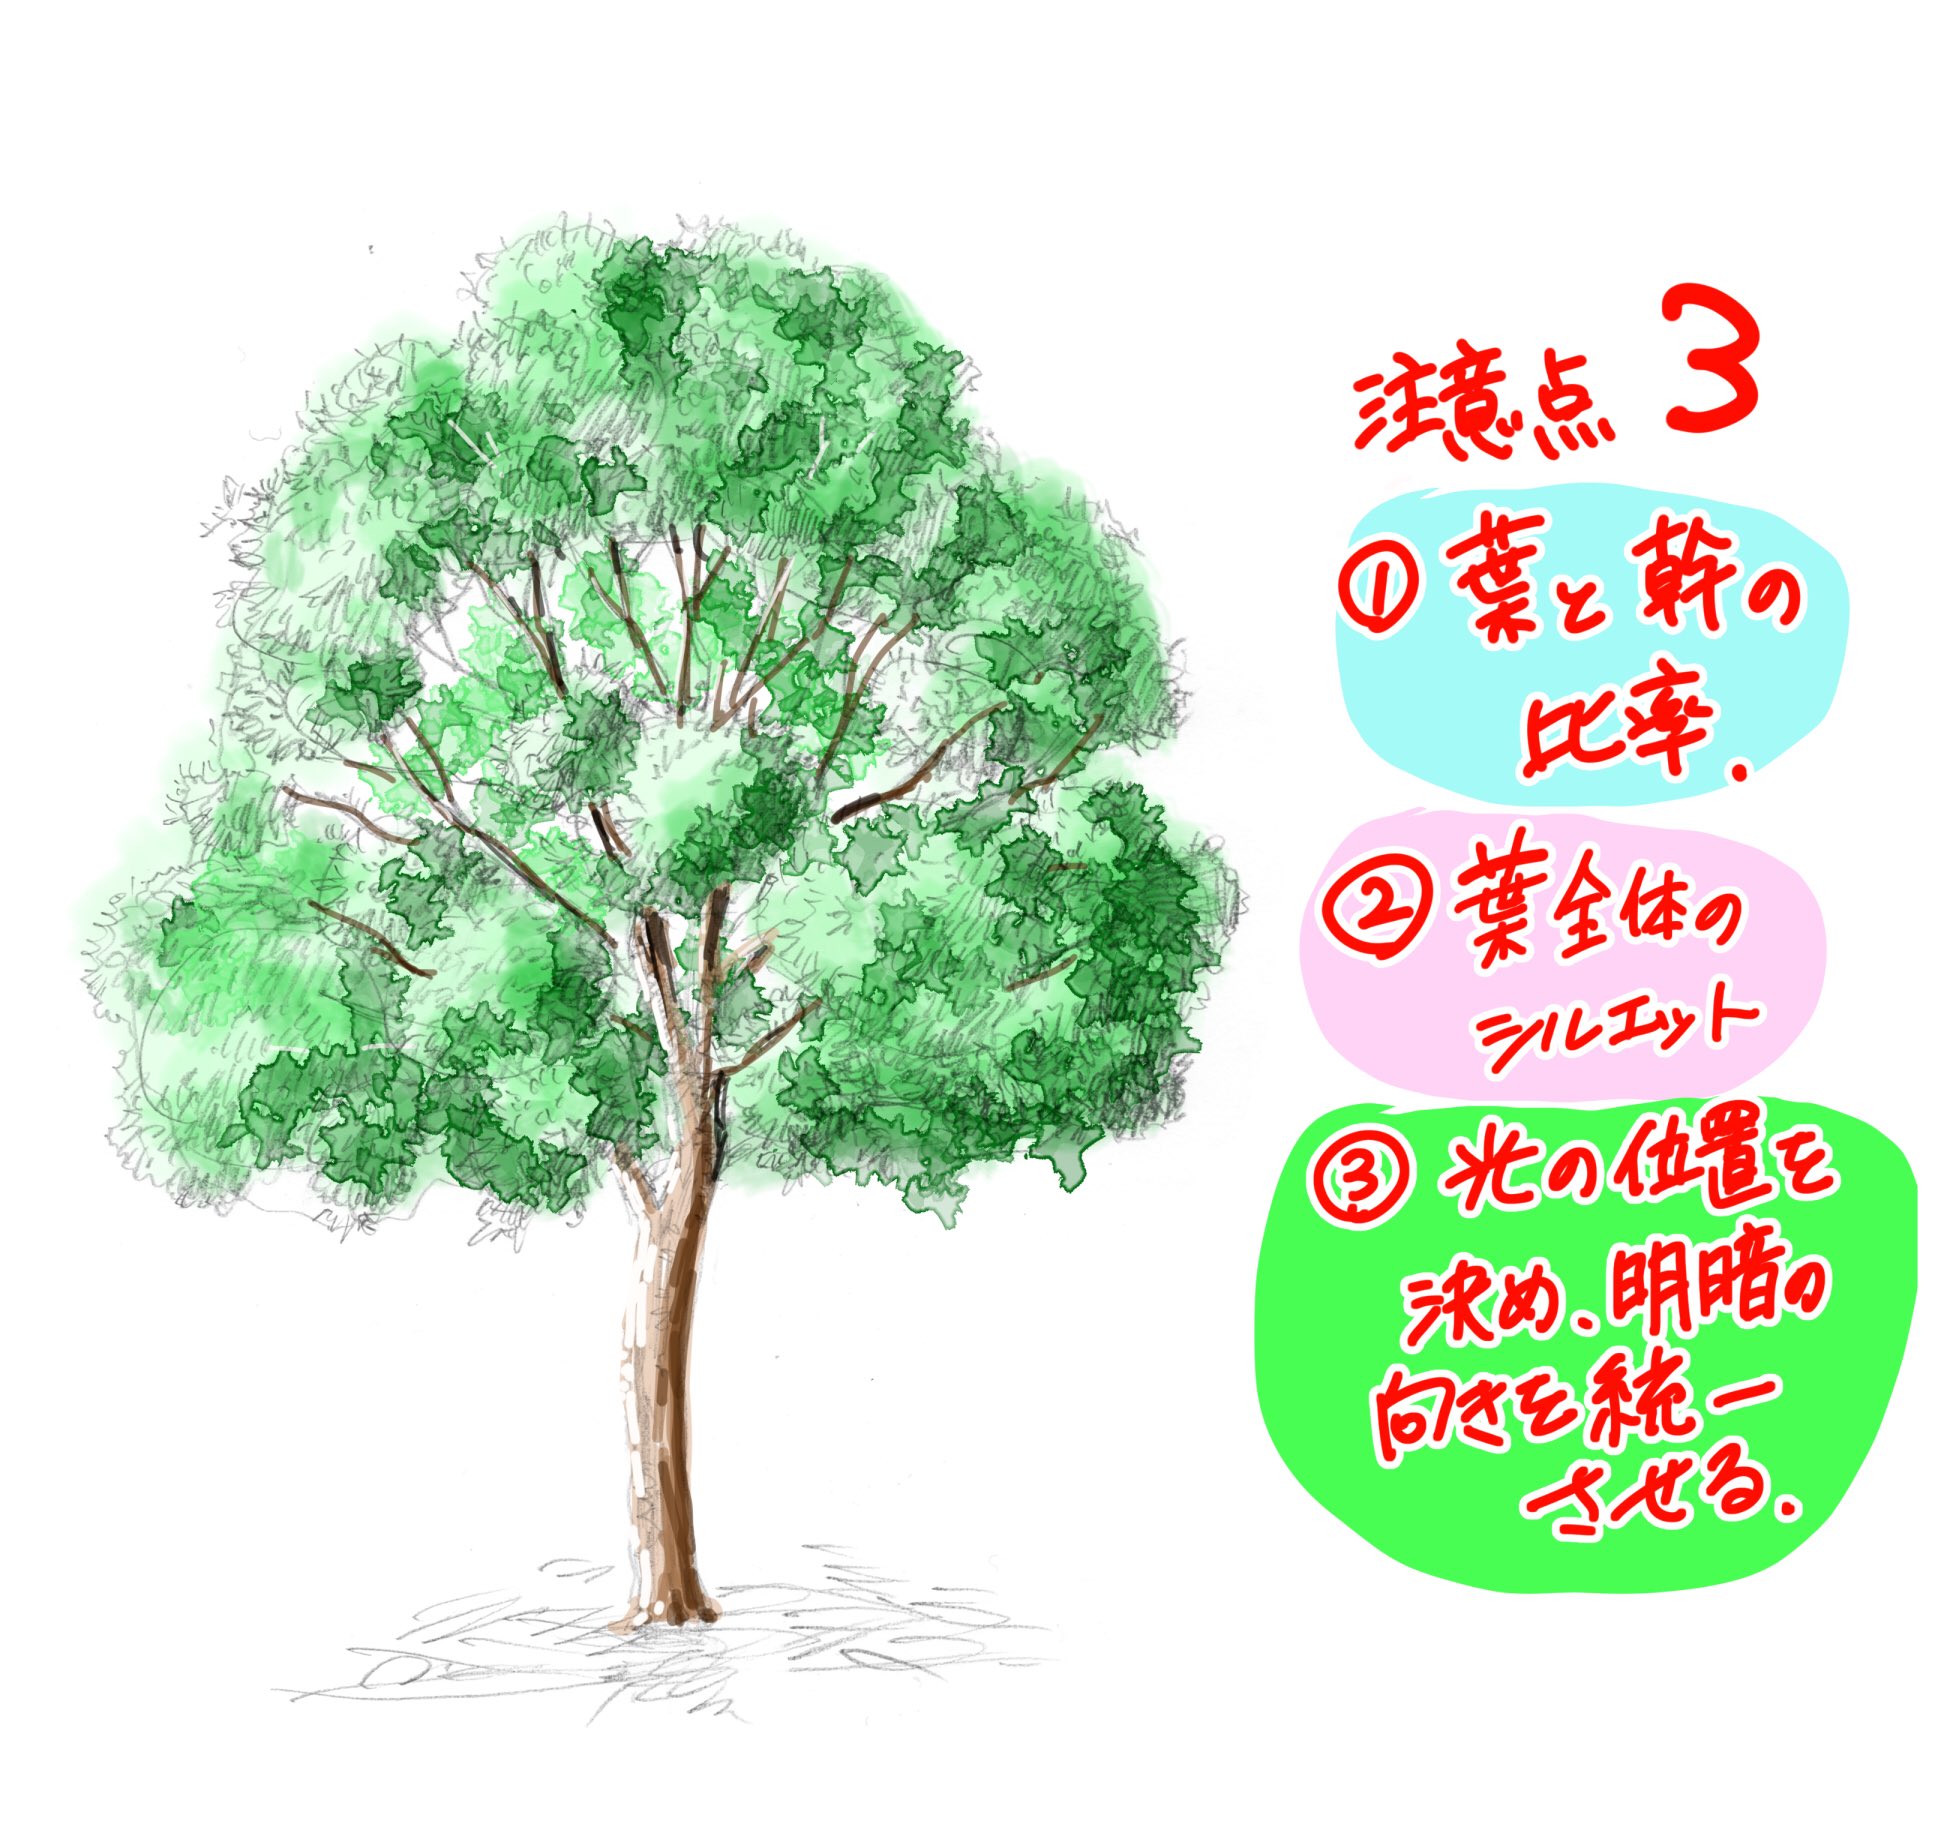 吉村拓也 イラスト講座 木の描き方 6000rt 1 7万いいね ありがとうございます 写真で解説マニュアル も よければ見てね T Co Ecd6i2iz0y Twitter